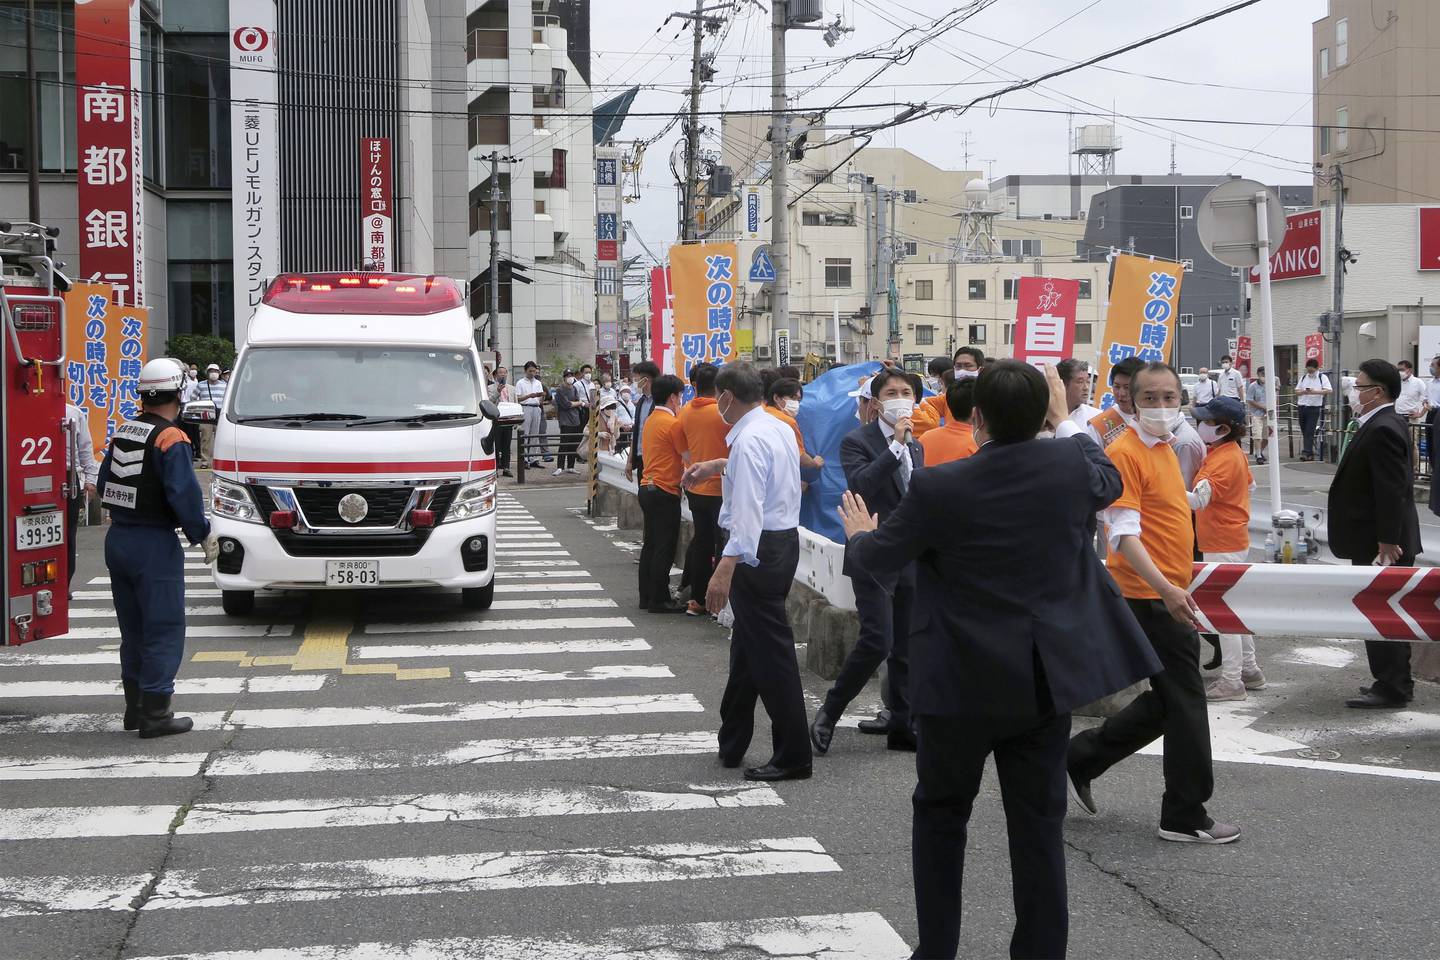 Folk styrtet til etter at Japans tidligere statsminister Shinzo Abe ble skutt i Nara fredag. Foto: Kyodo News via AP / NTB